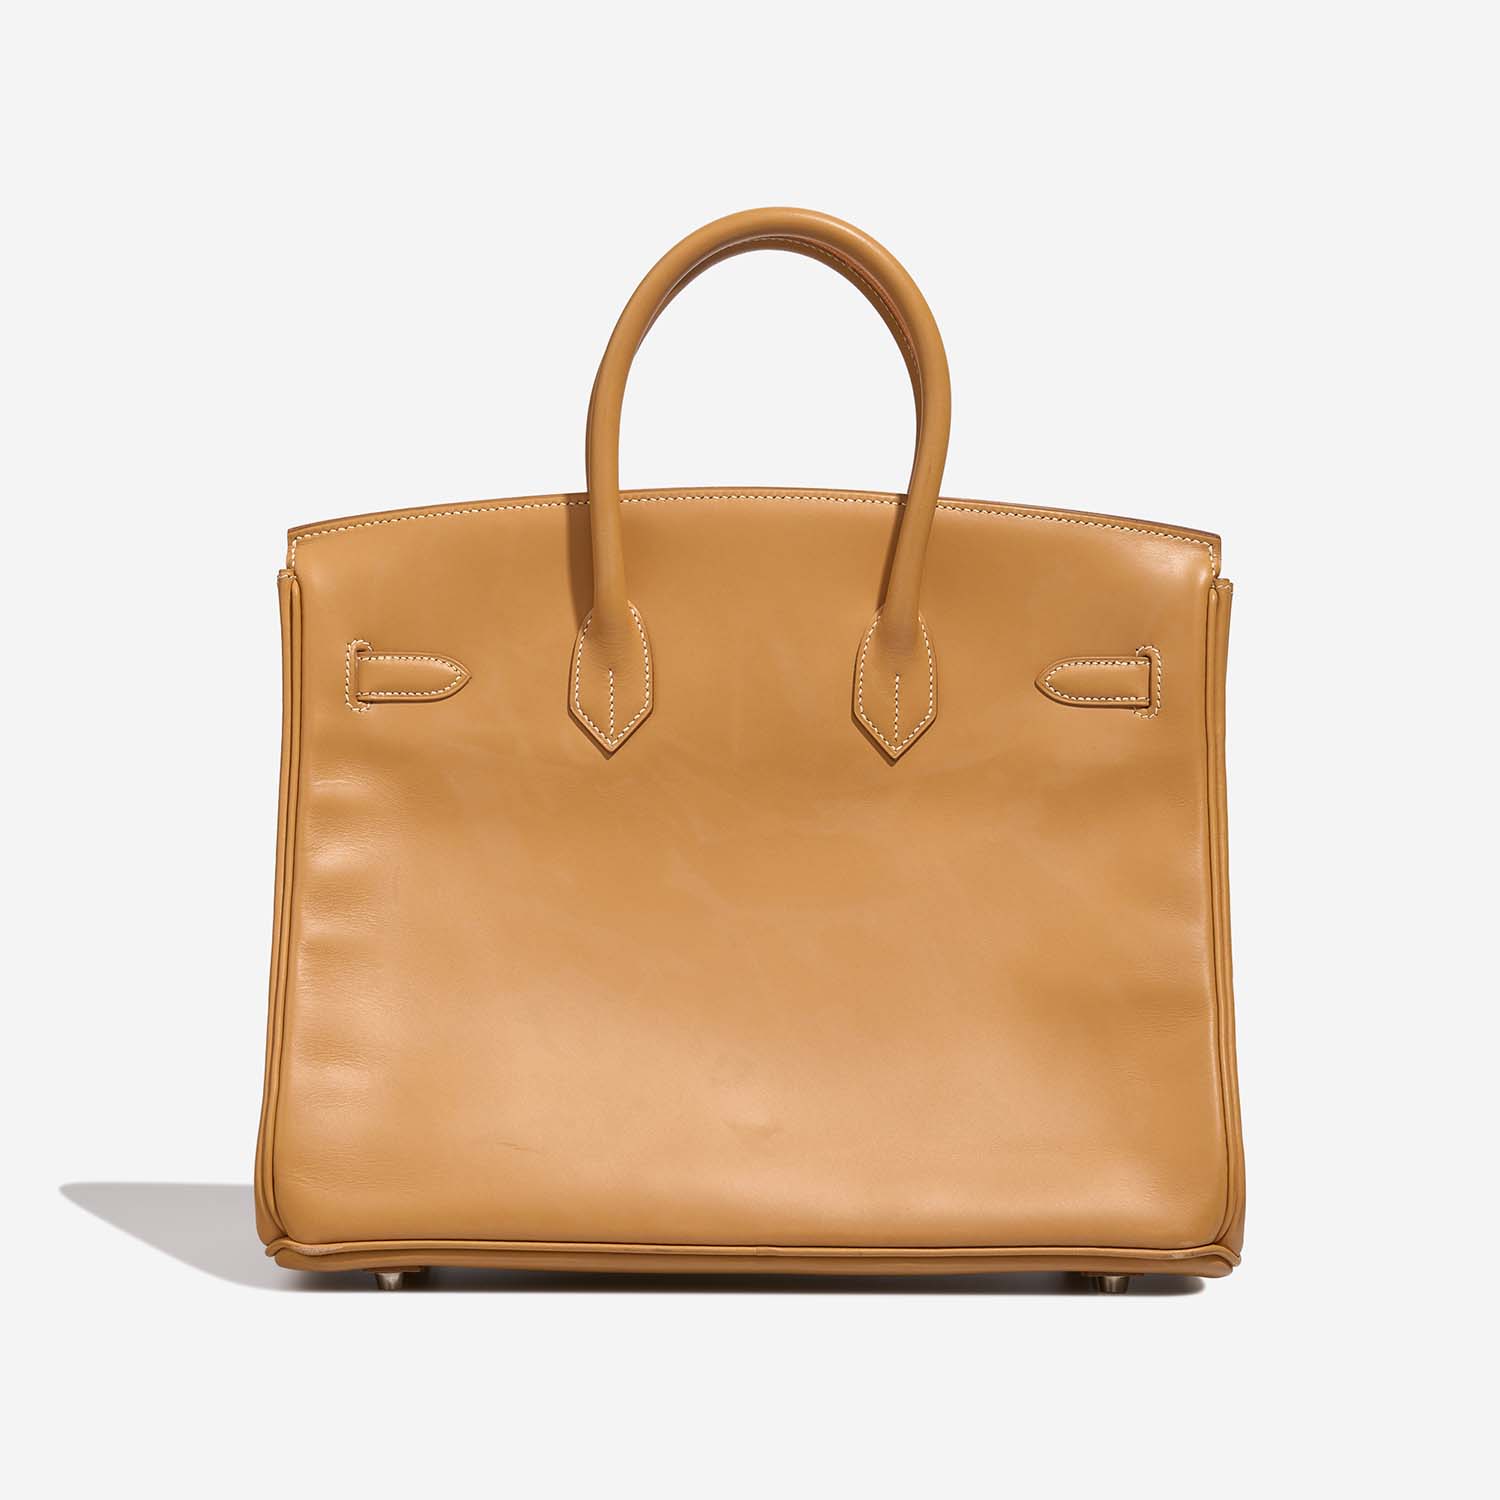 Hermès Birkin 35 Naturel Back | Verkaufen Sie Ihre Designertasche auf Saclab.com